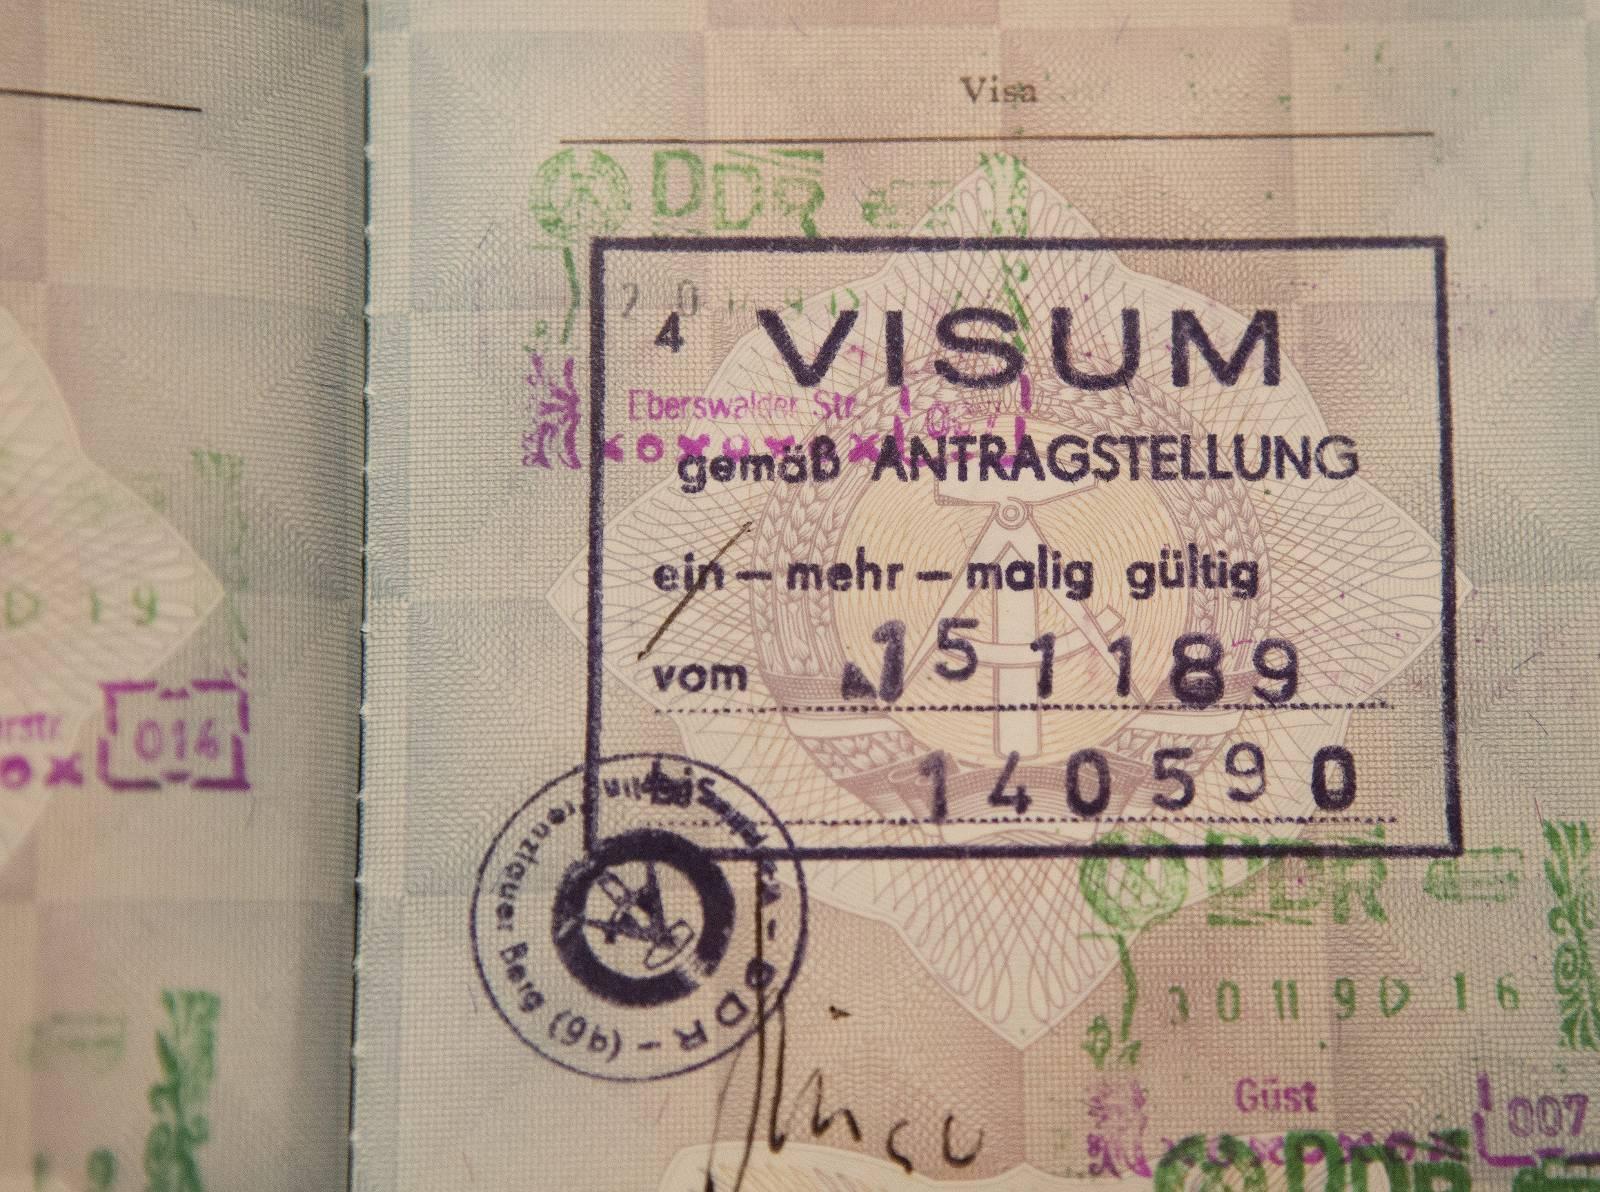 15. november 1989 var det ikke det noe problem å få visum til å dra til Vest. Snart ble det overflødig. 